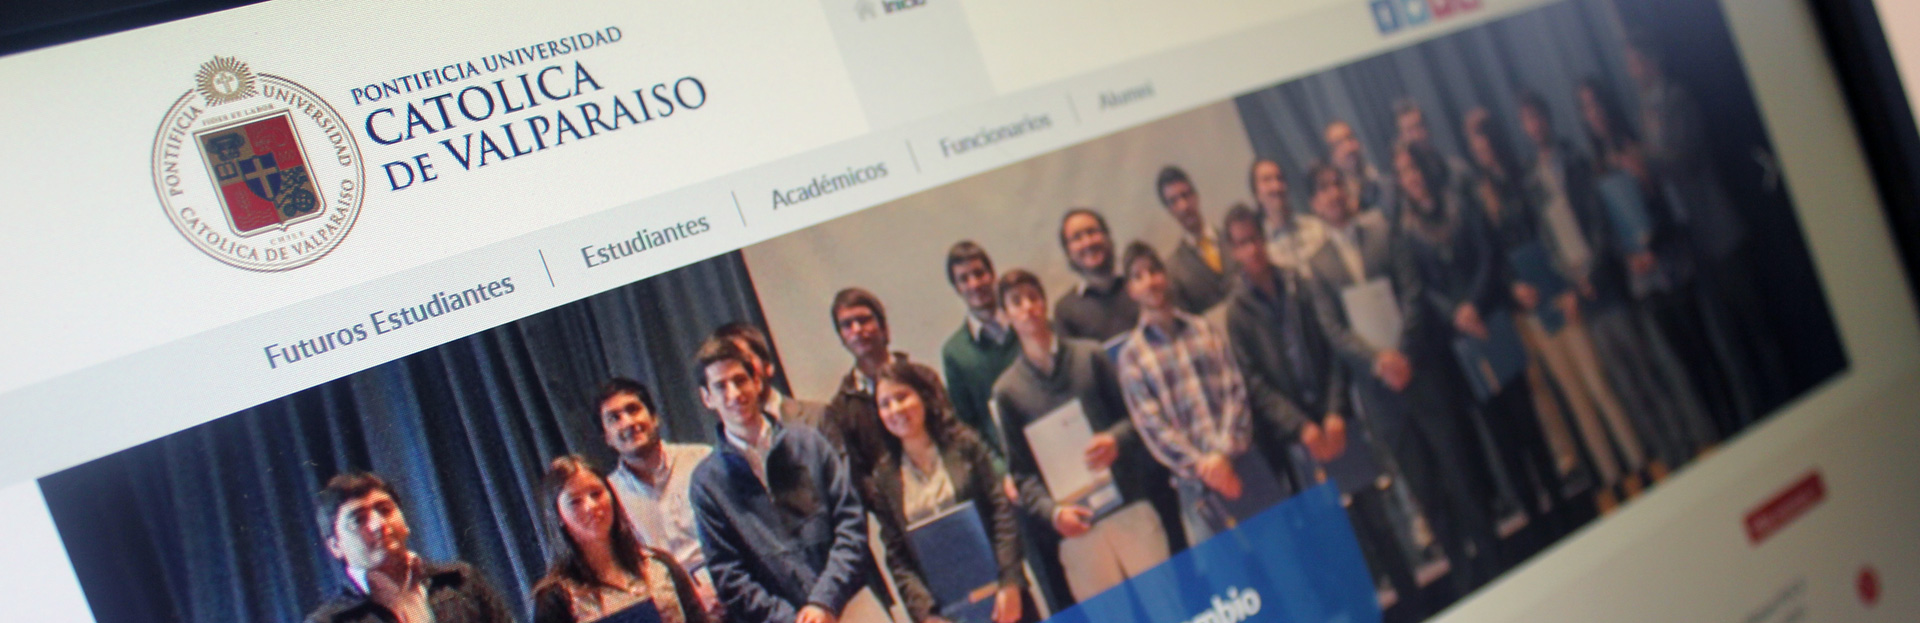 Pantalla mostrando el sitio de la Universidad Católica de Valparaíso